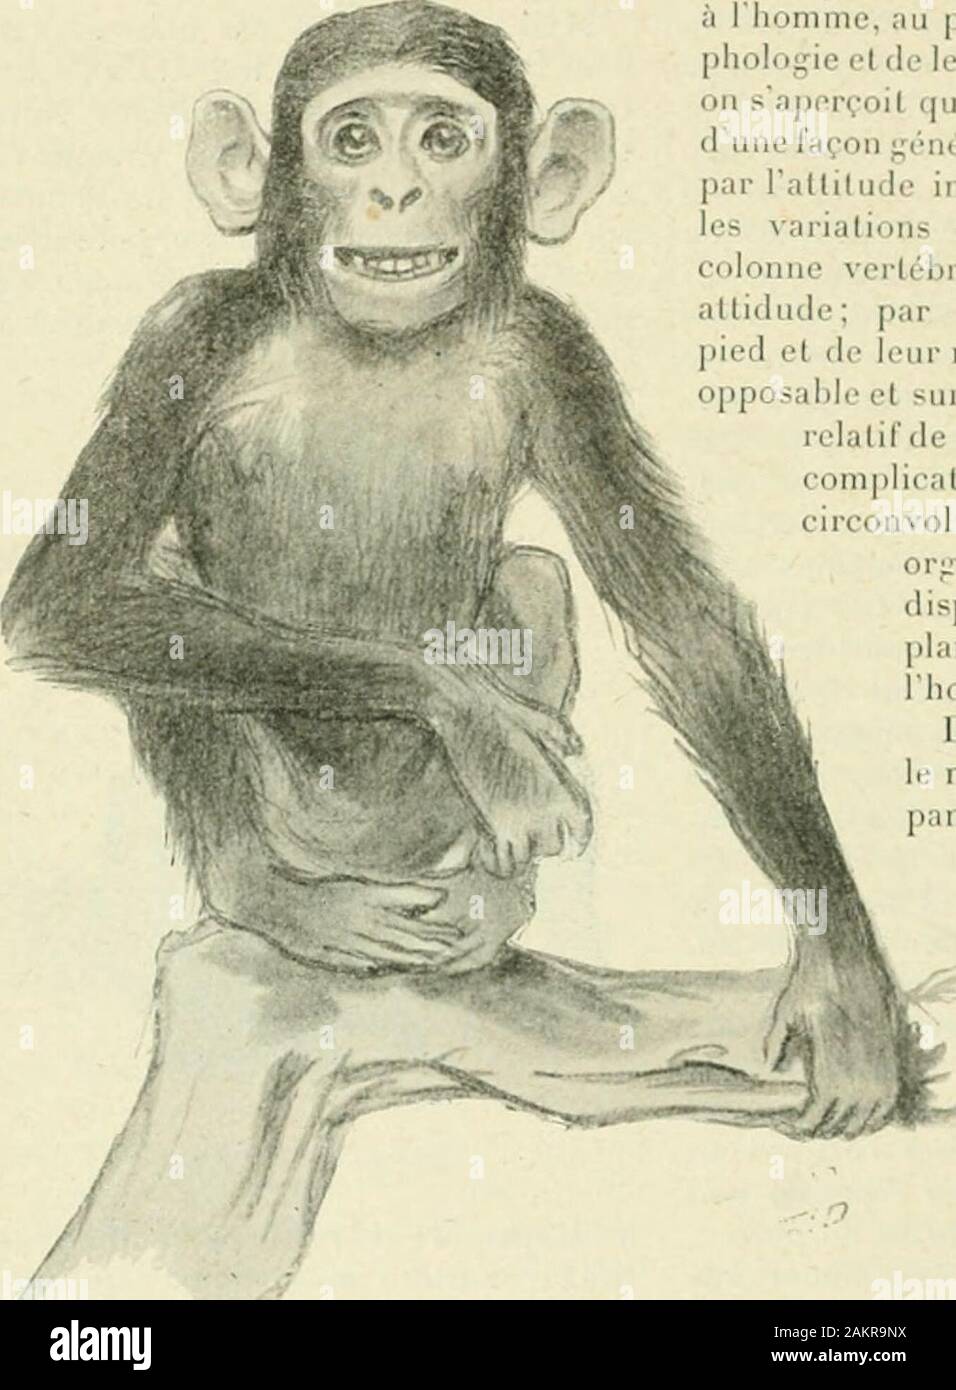 Le Monde moderne . .1 E U X E CHIMPANZÉ de la parenté de lhomme el du singe.Nous voudrions aussi donner quelquesrenseignements sur les nouvelles décou-vertes paléontologiques qui se rapportentà ces singes et à lhomme. Les singes anthropoïdes constituentun groupe très restreint du règne ani-mal, composé de quatre genres seule-ment. Deux de ces genres, le gorille etle chimpanzé, habitent lAfrique: deuxautres, lorang-outan et le gibbon, sontconfinés dans le sud-est de l.Asie. Onpeut même réduire le groupe en questionà trois genres seulement, car beaucoupde naturalistes considèrent le gibbon Li;S Stock Photo